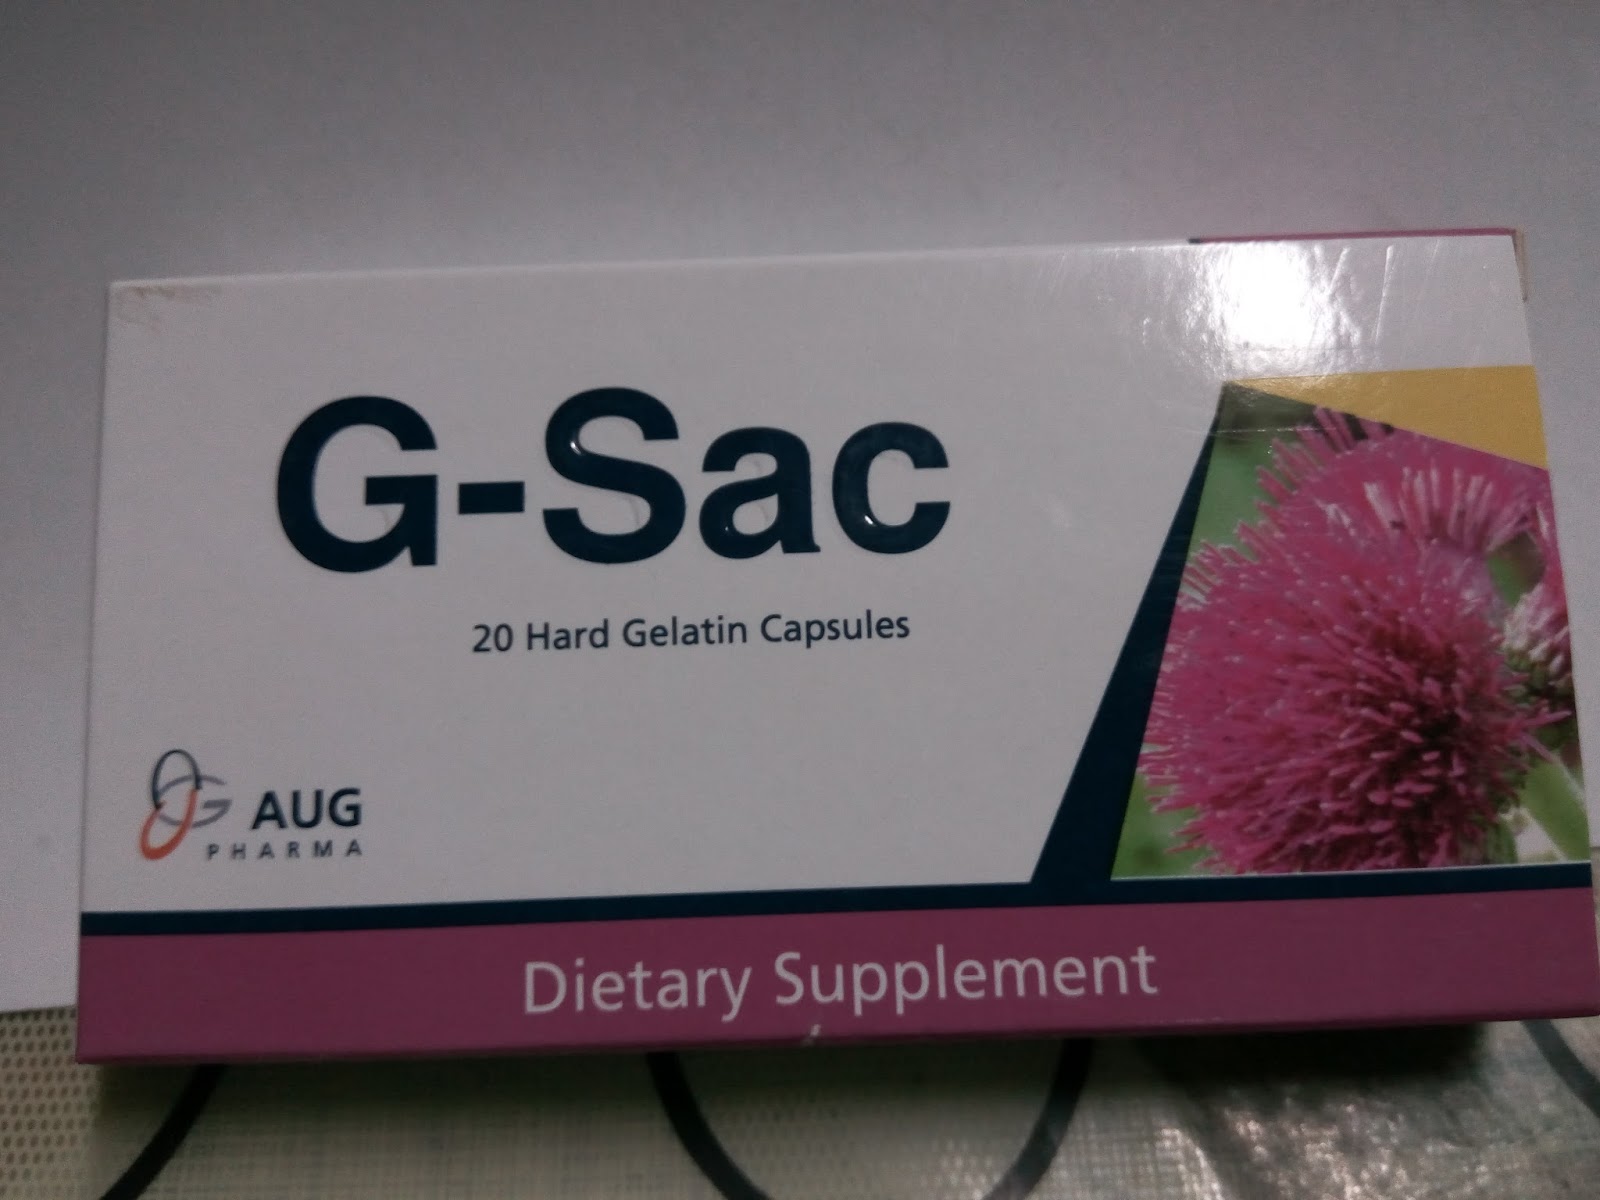 سعر جي ساك G-Sac والآثار الجانبية وفوائده لتنشيط الكبد‎